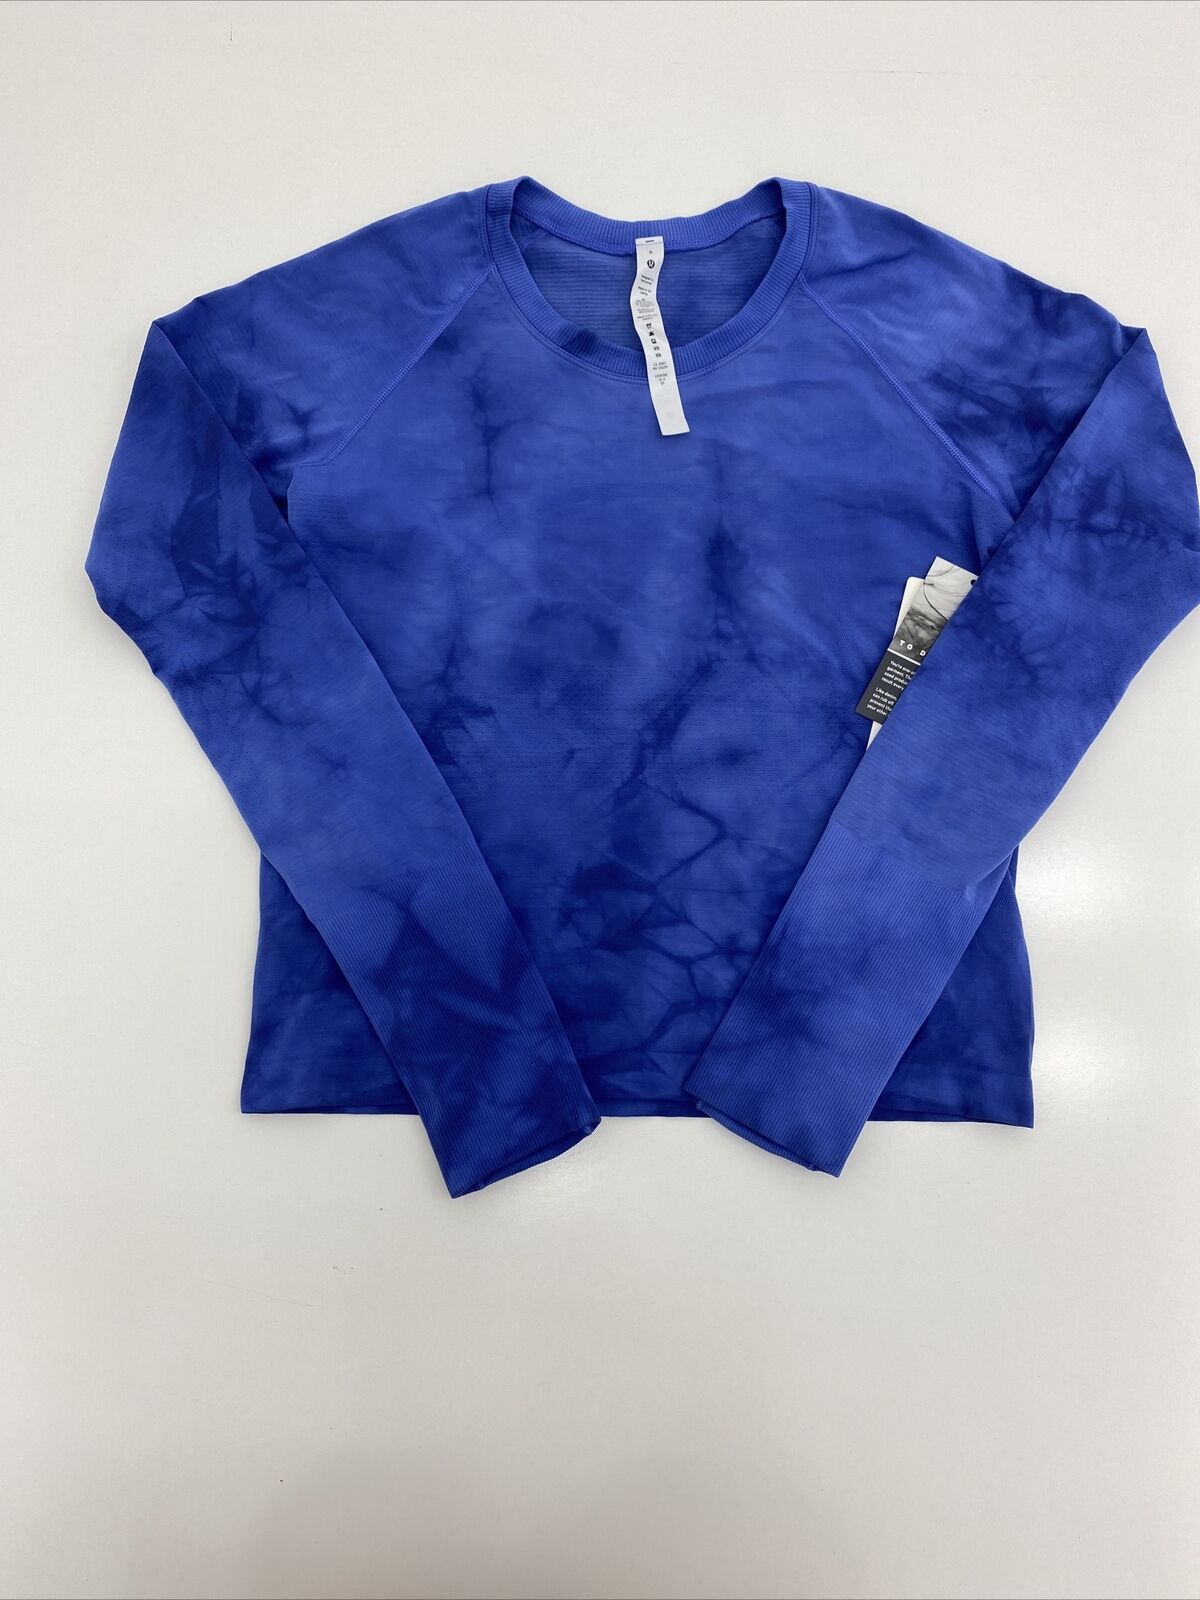 Lululemon Run Swiftly LS Blue Shirt Women's Size 10 Space Dye Poseidon  Heathered